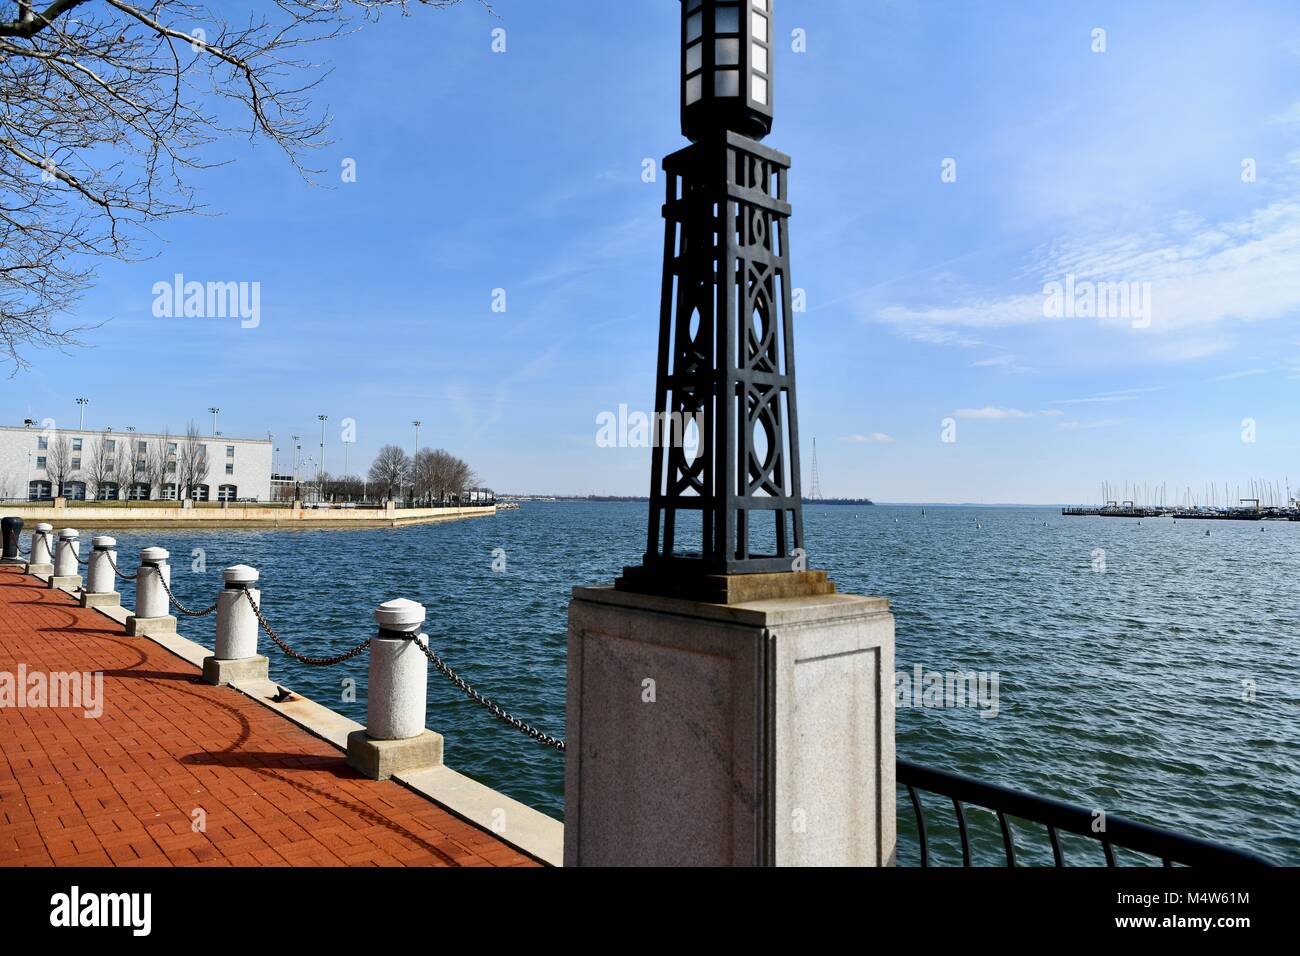 Vue sur la baie de Chesapeake et de l'intérieur de l'United States Naval Academy, Annapolis, MD, USA Banque D'Images